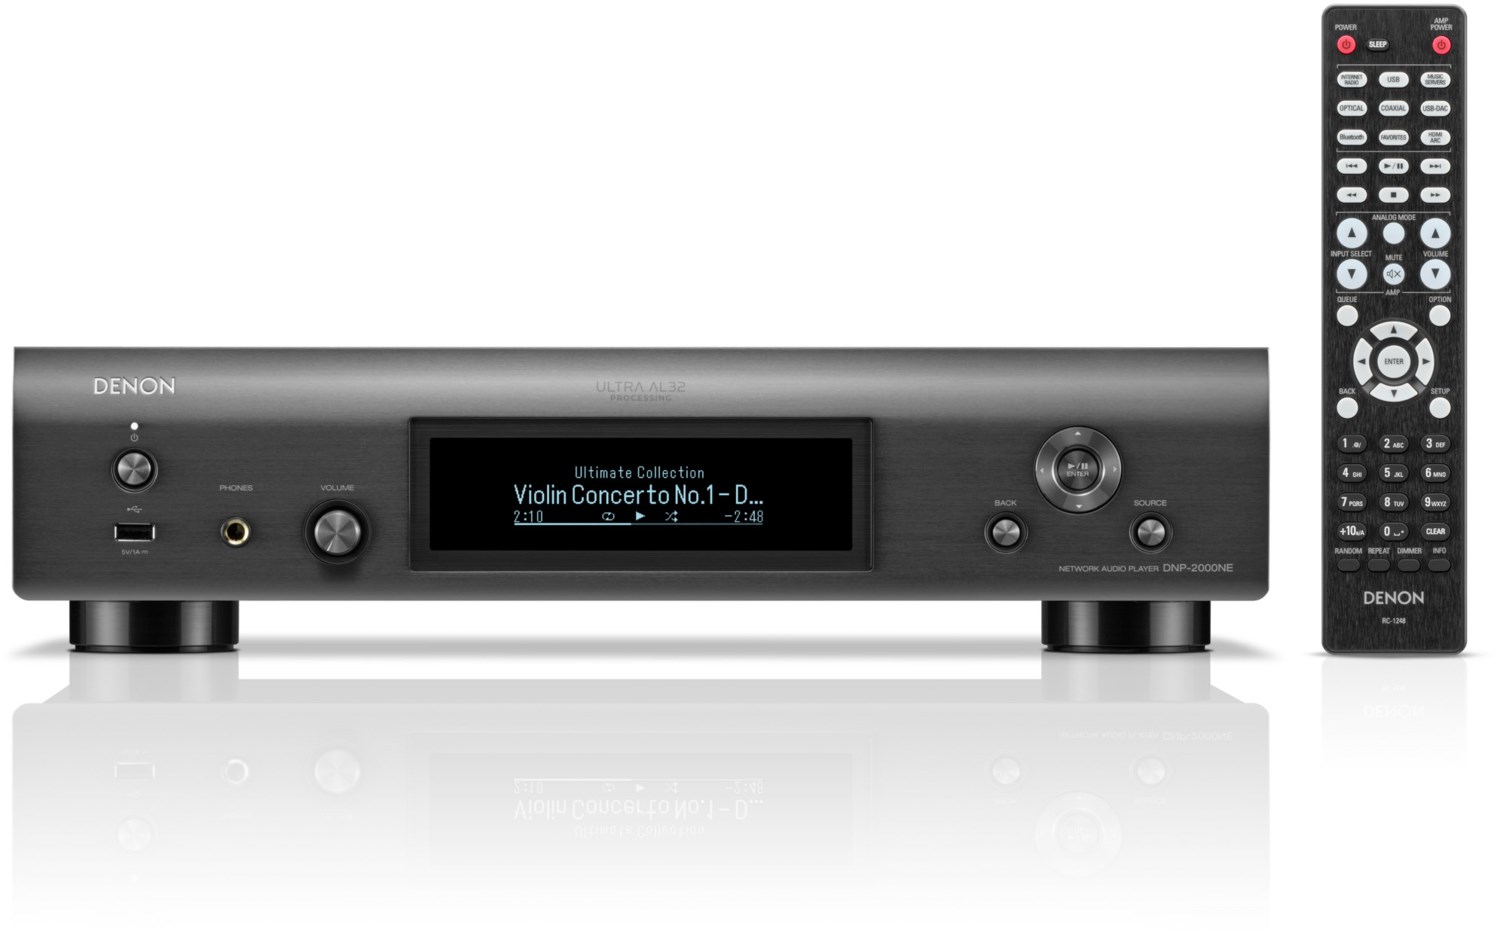 DNP-2000NE Audio Streamer silber-graphit von Denon